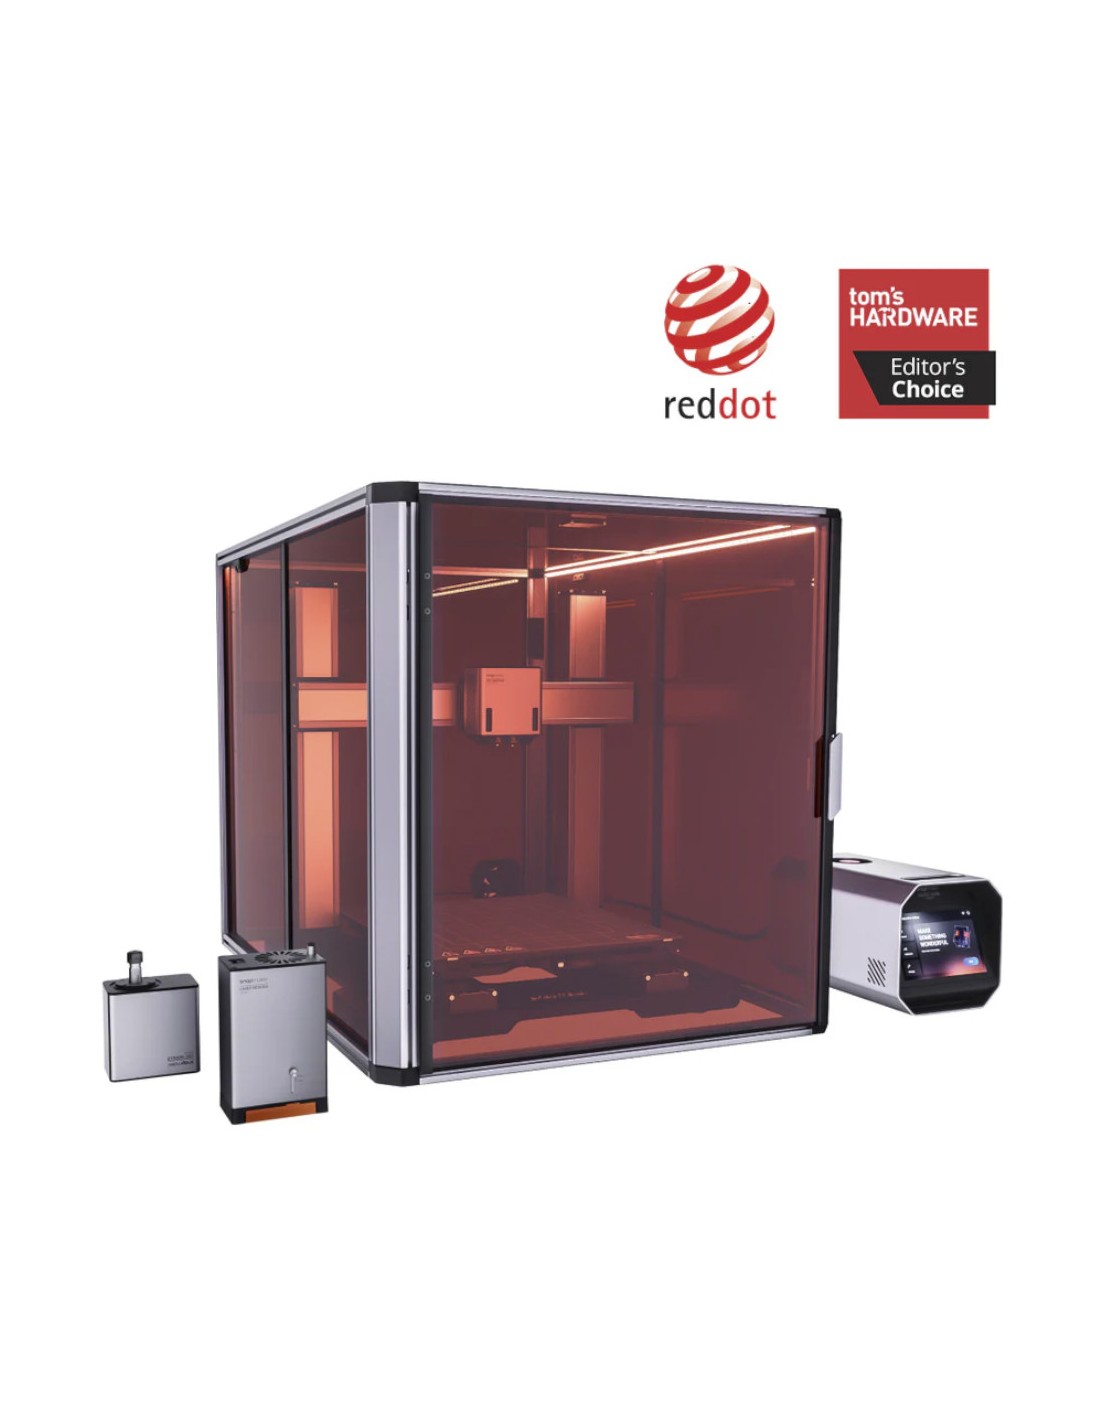 Snapmaker Artisan 3-en-1 - impresora 3D, fresadora CNC, máquina de grabado y corte láser 40W